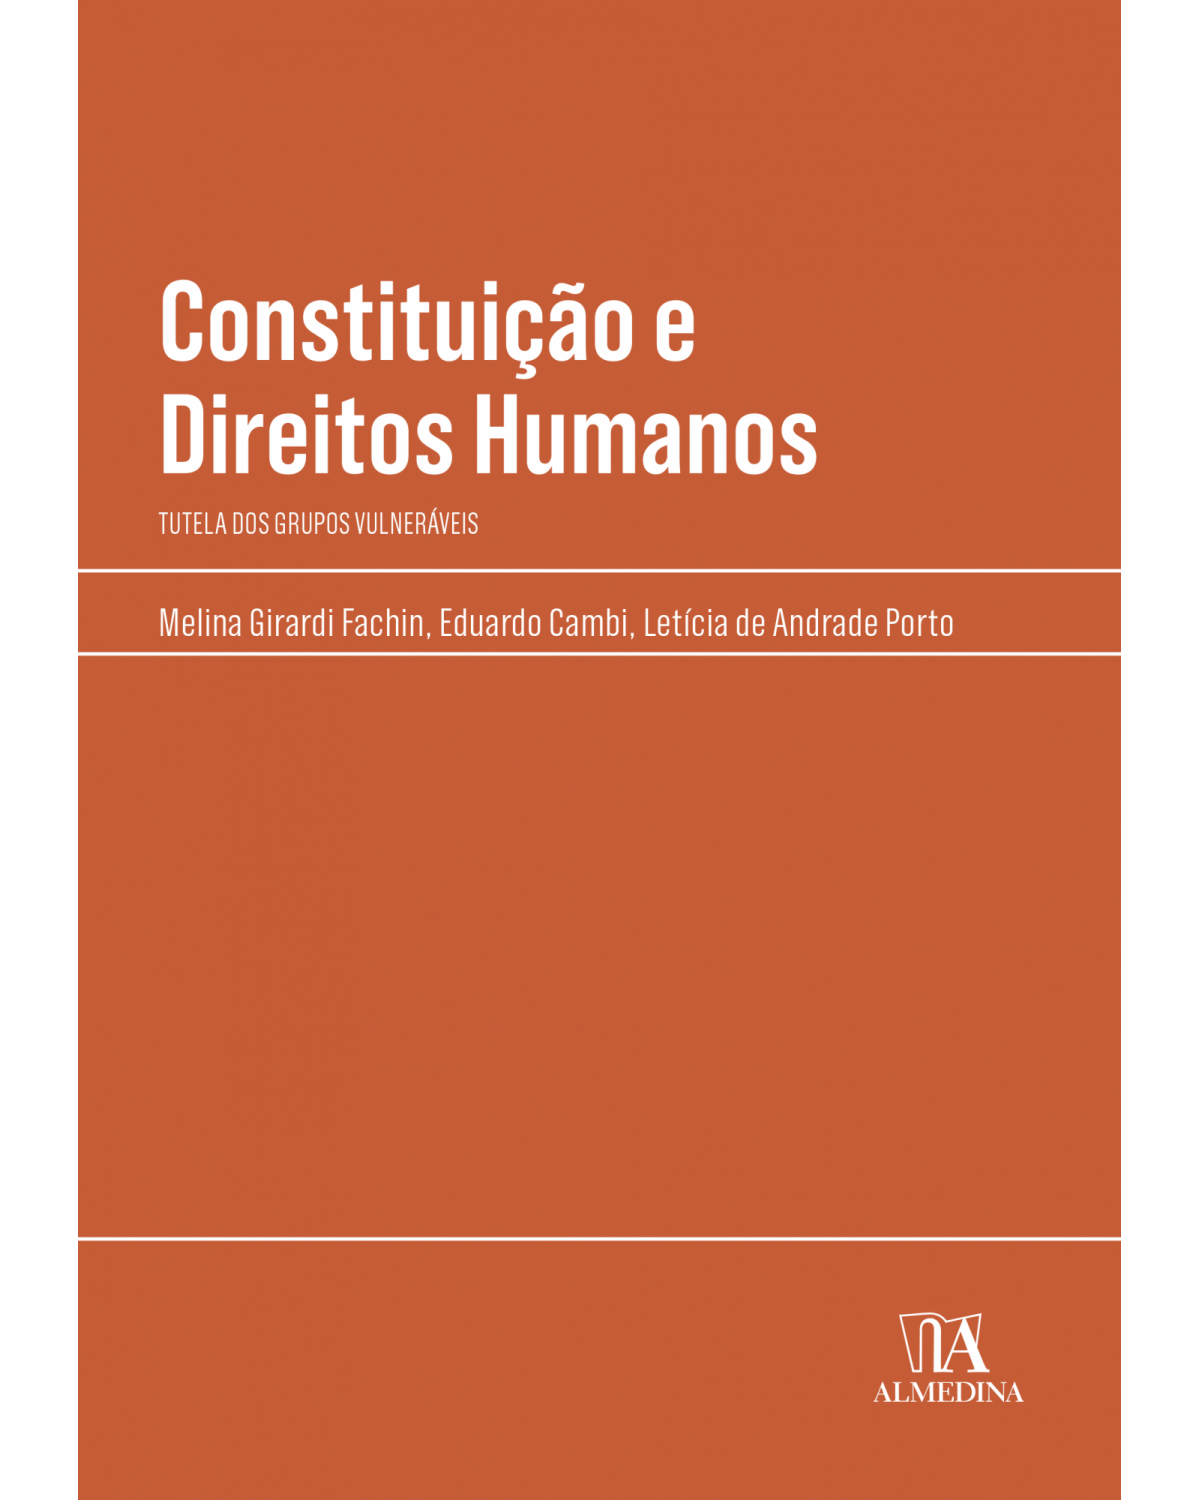 Constituição e direitos humanos - tutela dos grupos vulneráveis - 1ª Edição | 2022